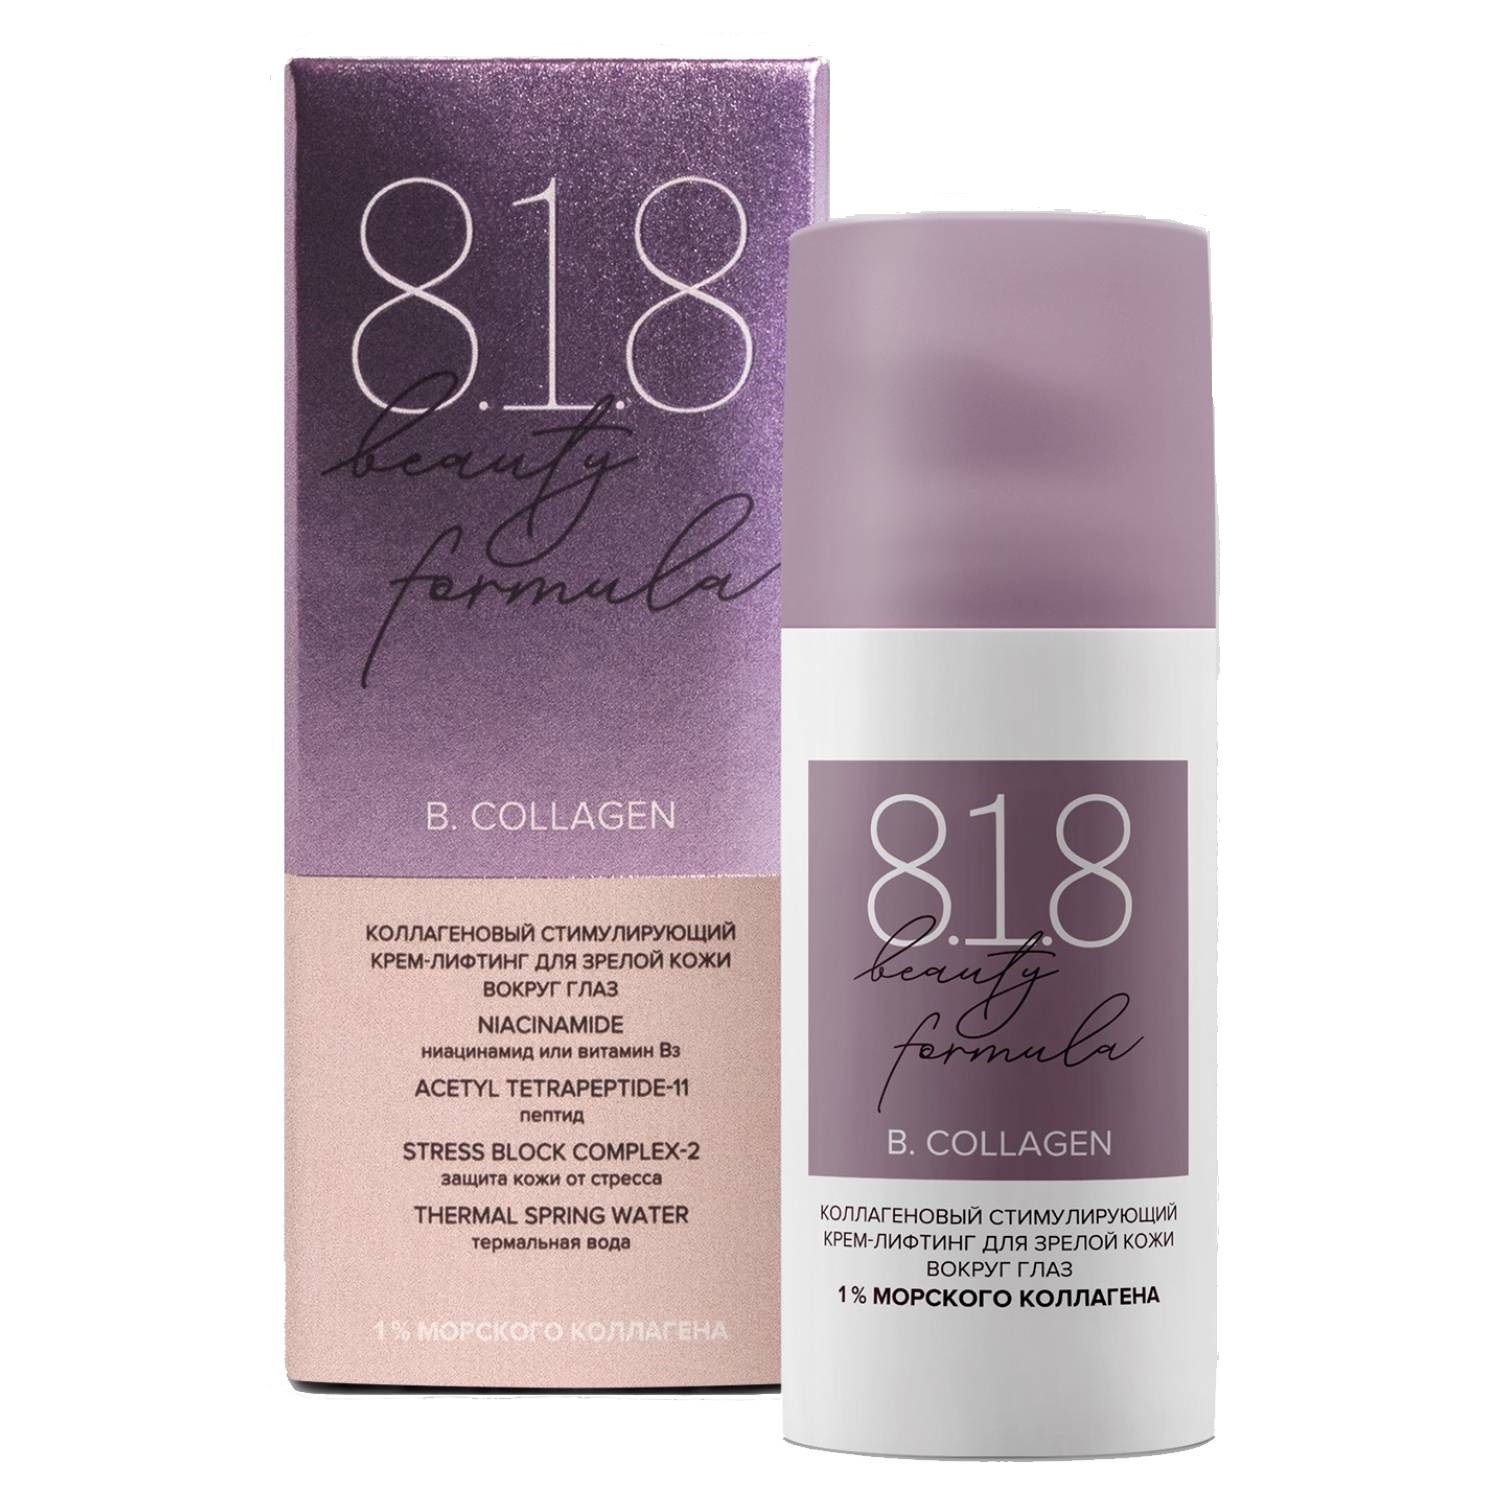 8.1.8 Beauty Formula Коллагеновый стимулирующий крем-лифтинг для кожи вокруг глаз, 15 мл (8.1.8 Beauty Formula, B. Collagen)